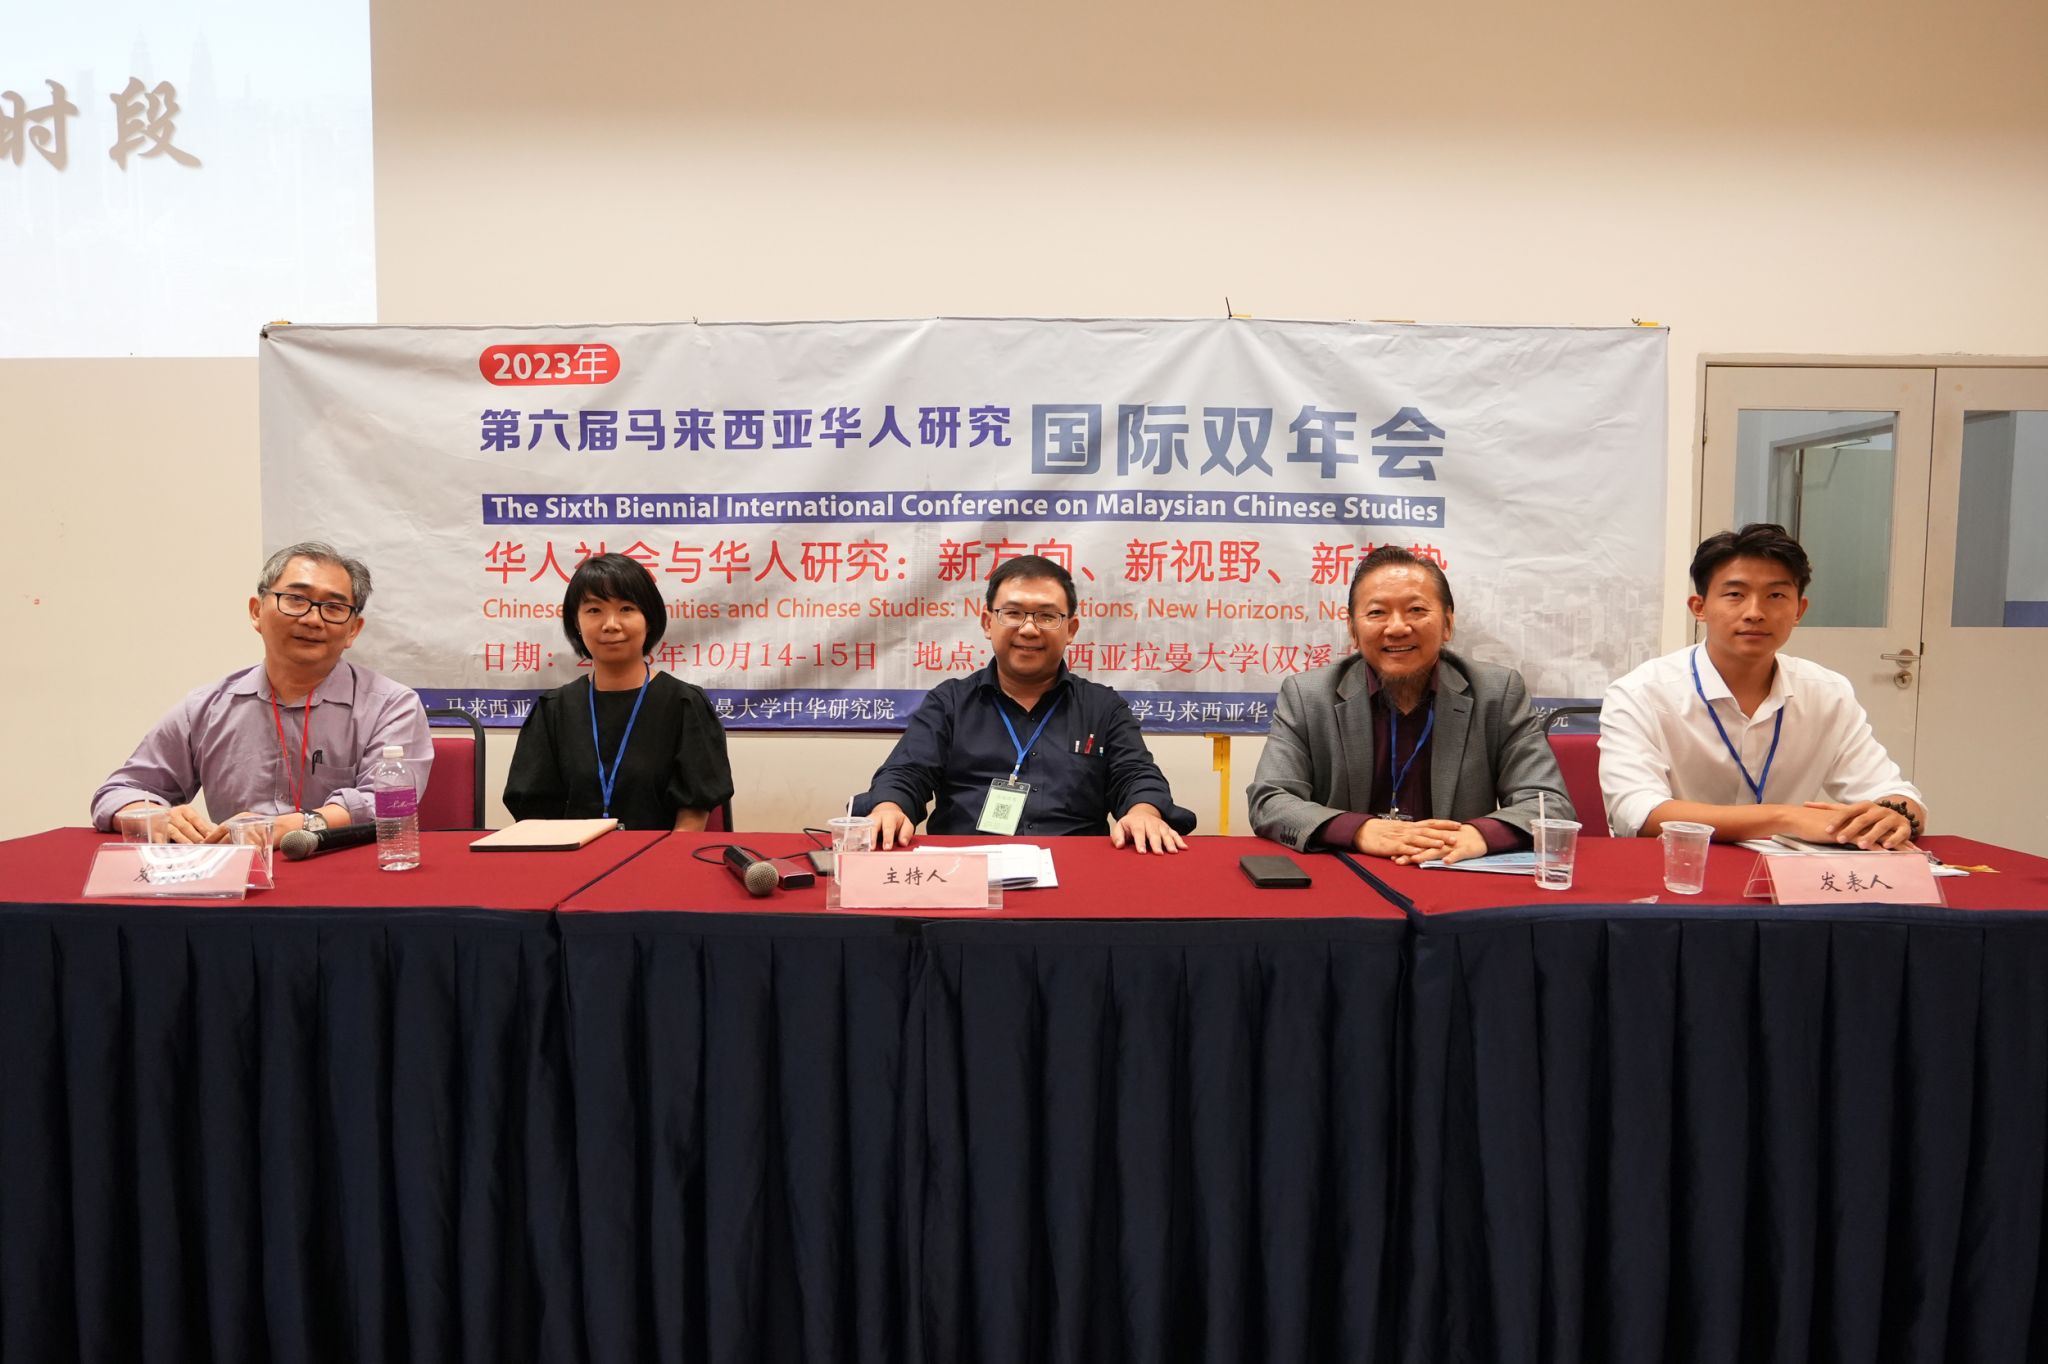 我院社会学系本科生赴马来西亚参加“华人研究国际双年会”